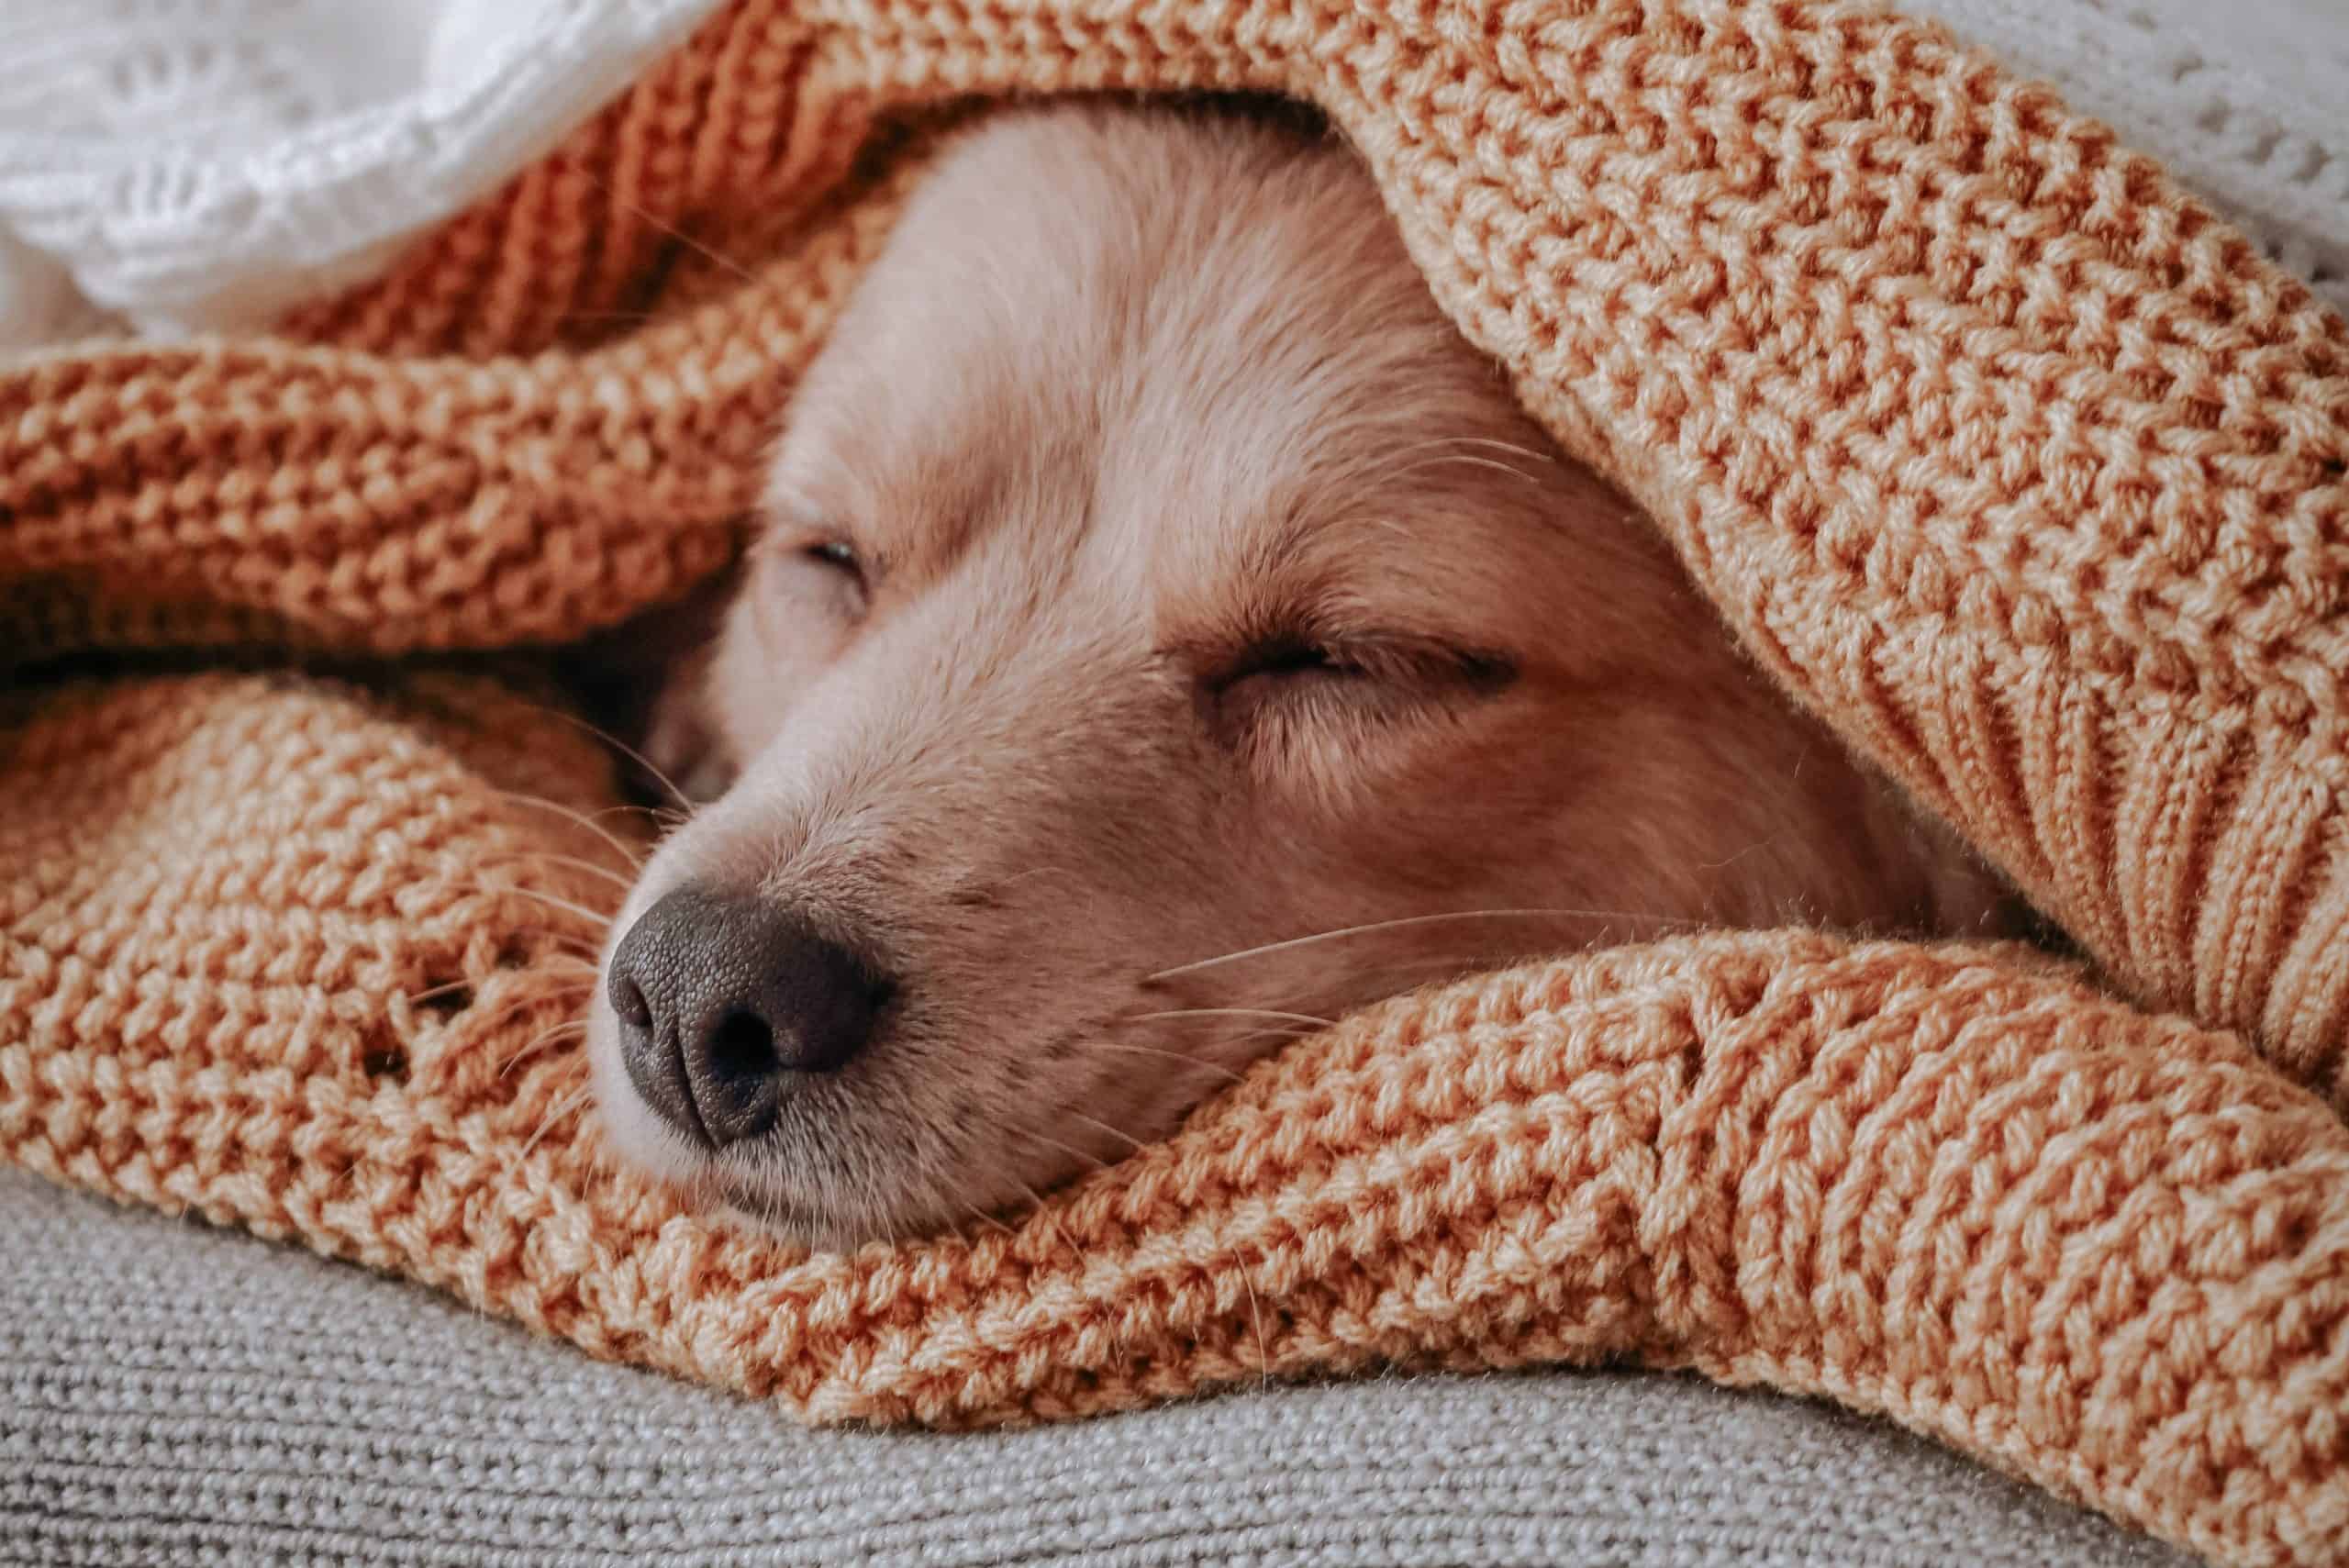 weighted blankets help deep sleep